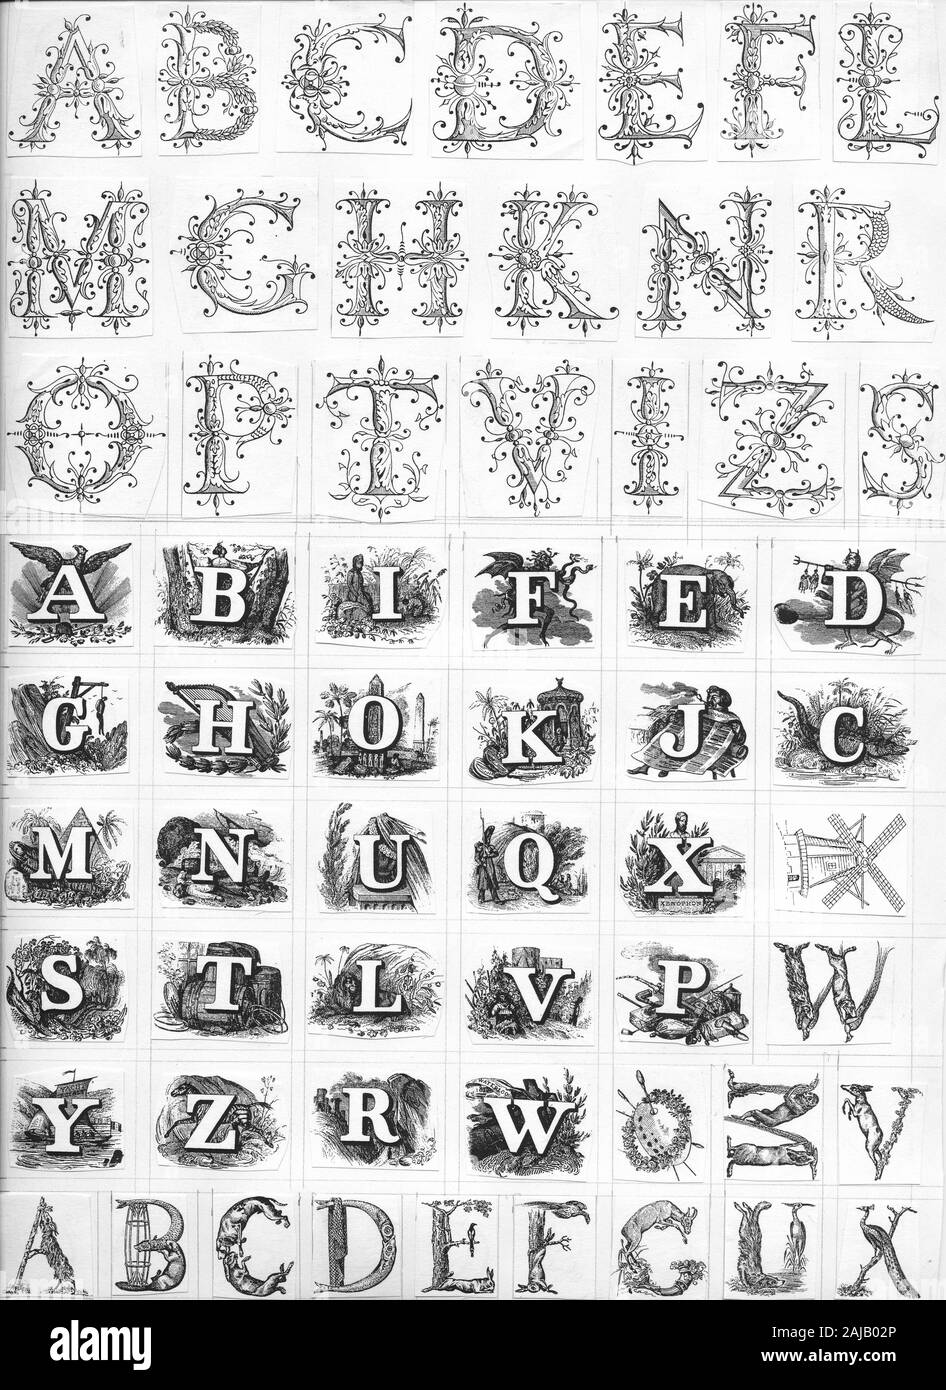 Vignette letters templates for cliché making, Vignetten Buchstaben Vorlagen für Klischee Herstellung Stock Photo